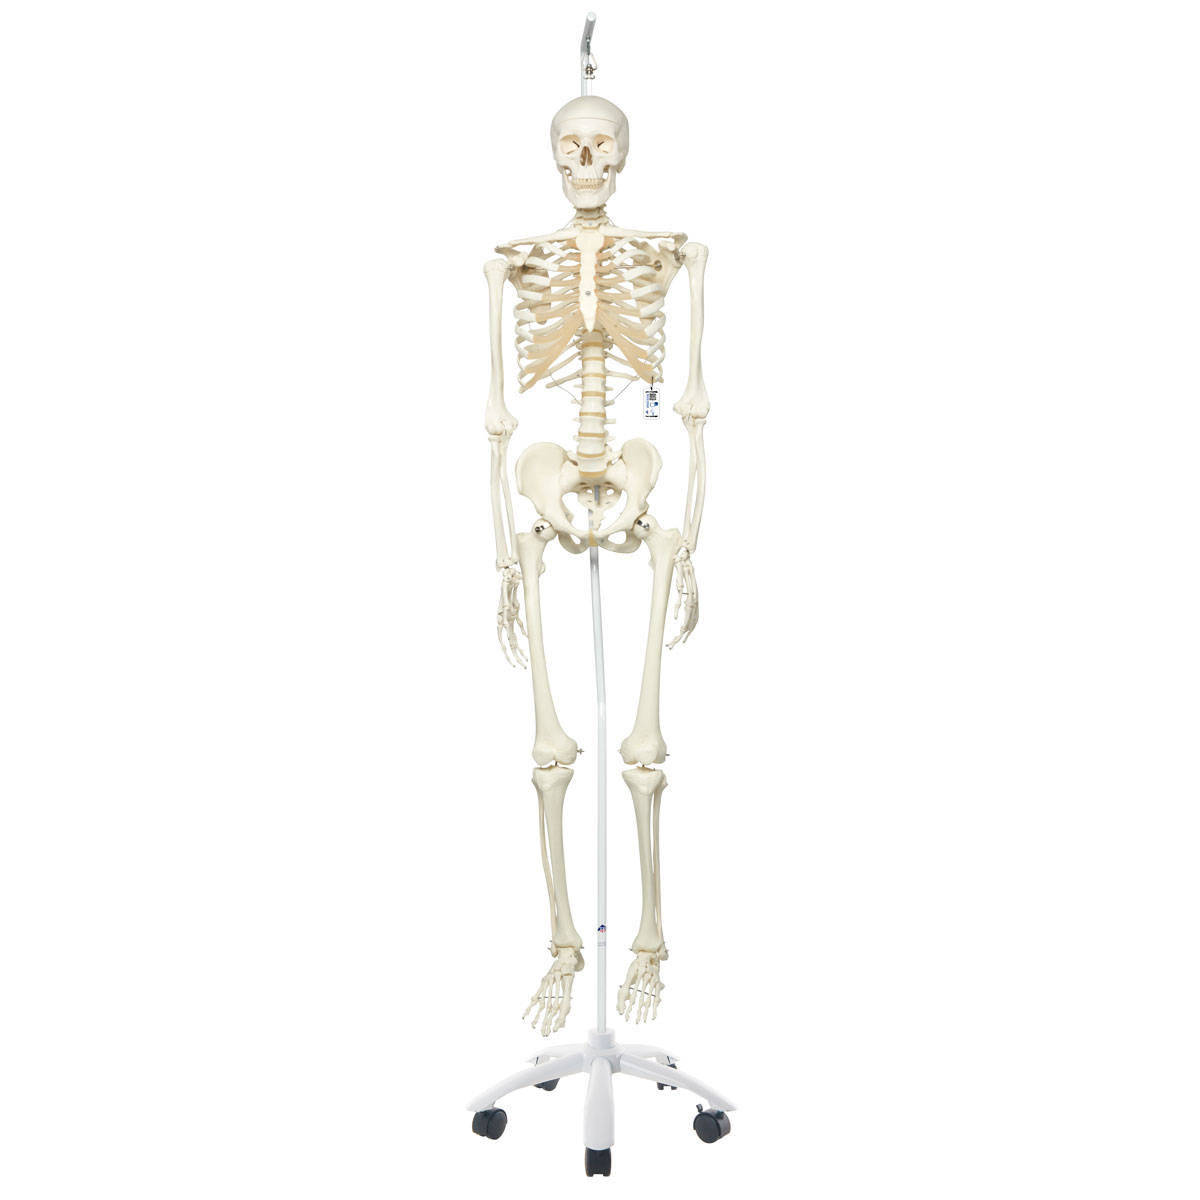 Menschliches Skelett Modell "Stan", lebensgroß, an Metallhängestativ mit Rollen - 3B Smart Anatomy, Bestellnummer 1020172, A10/1, 3B Scientific